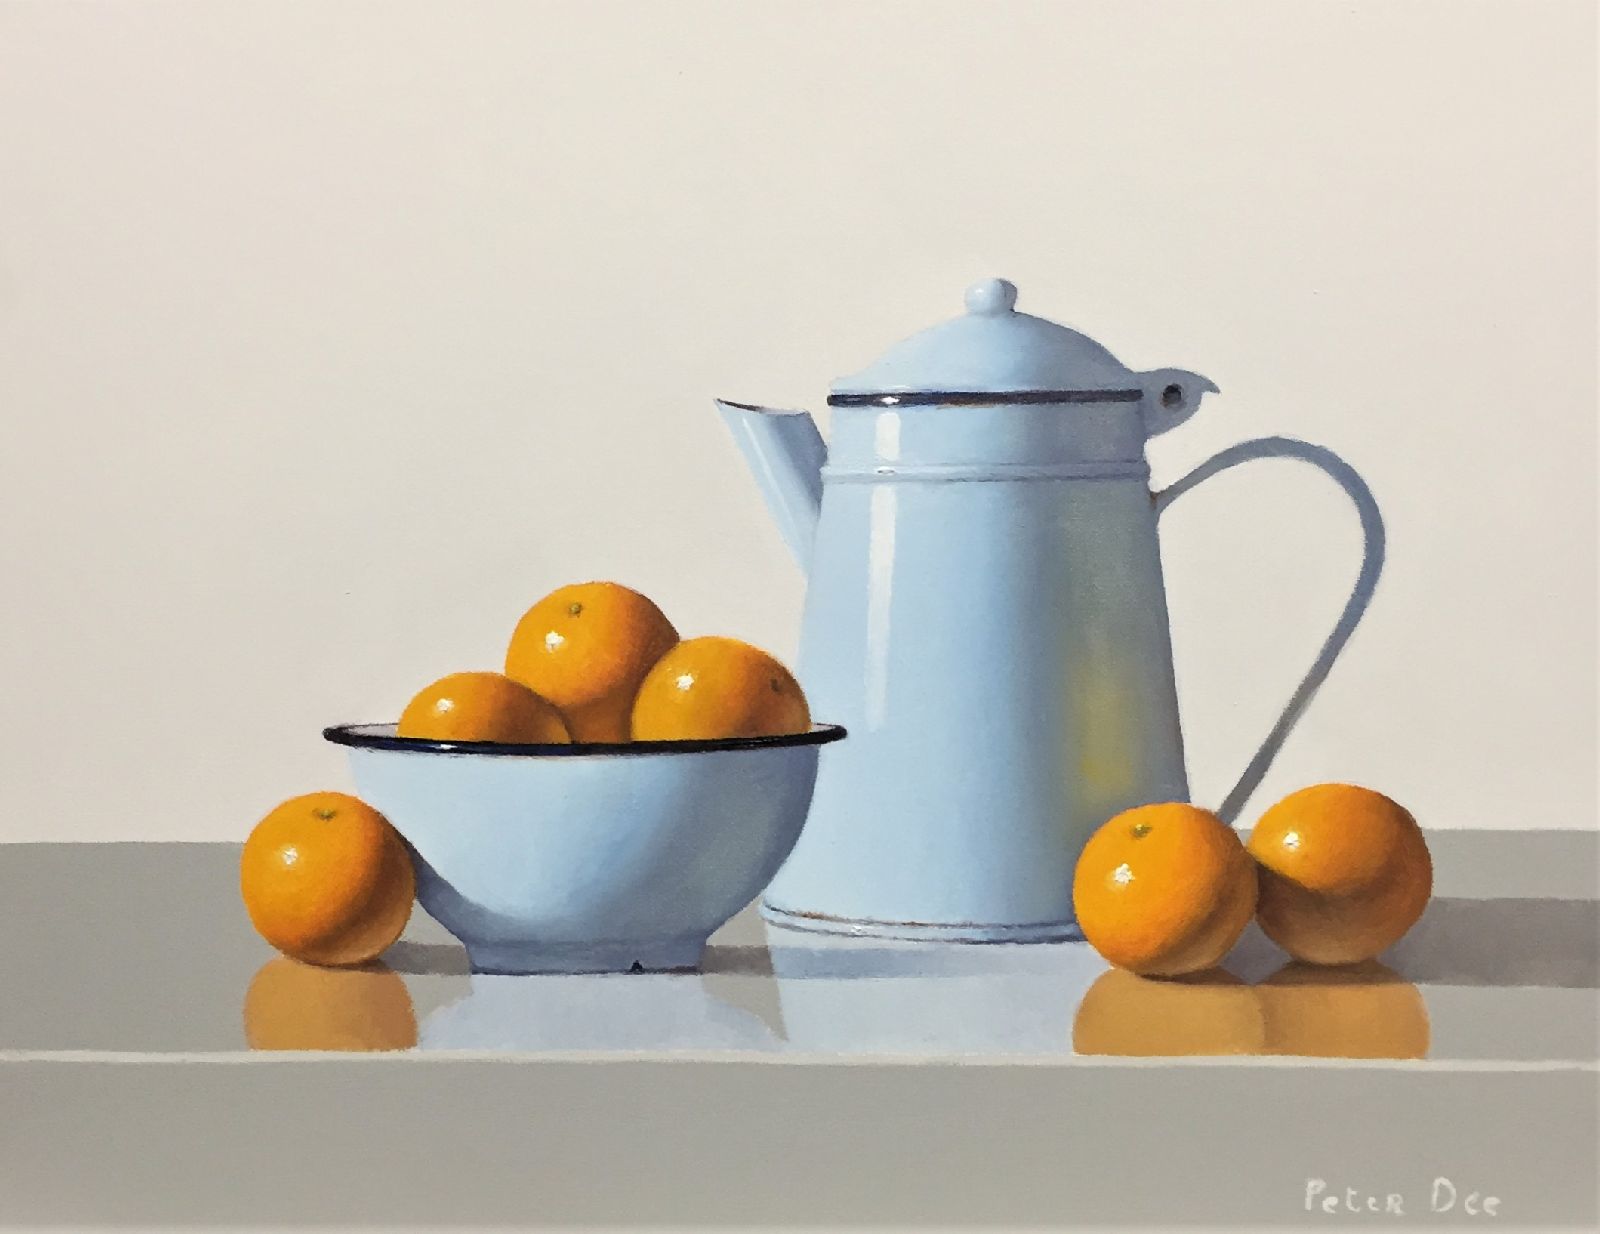 Peter Dee - Vintage Blue Enamelware with Oranges